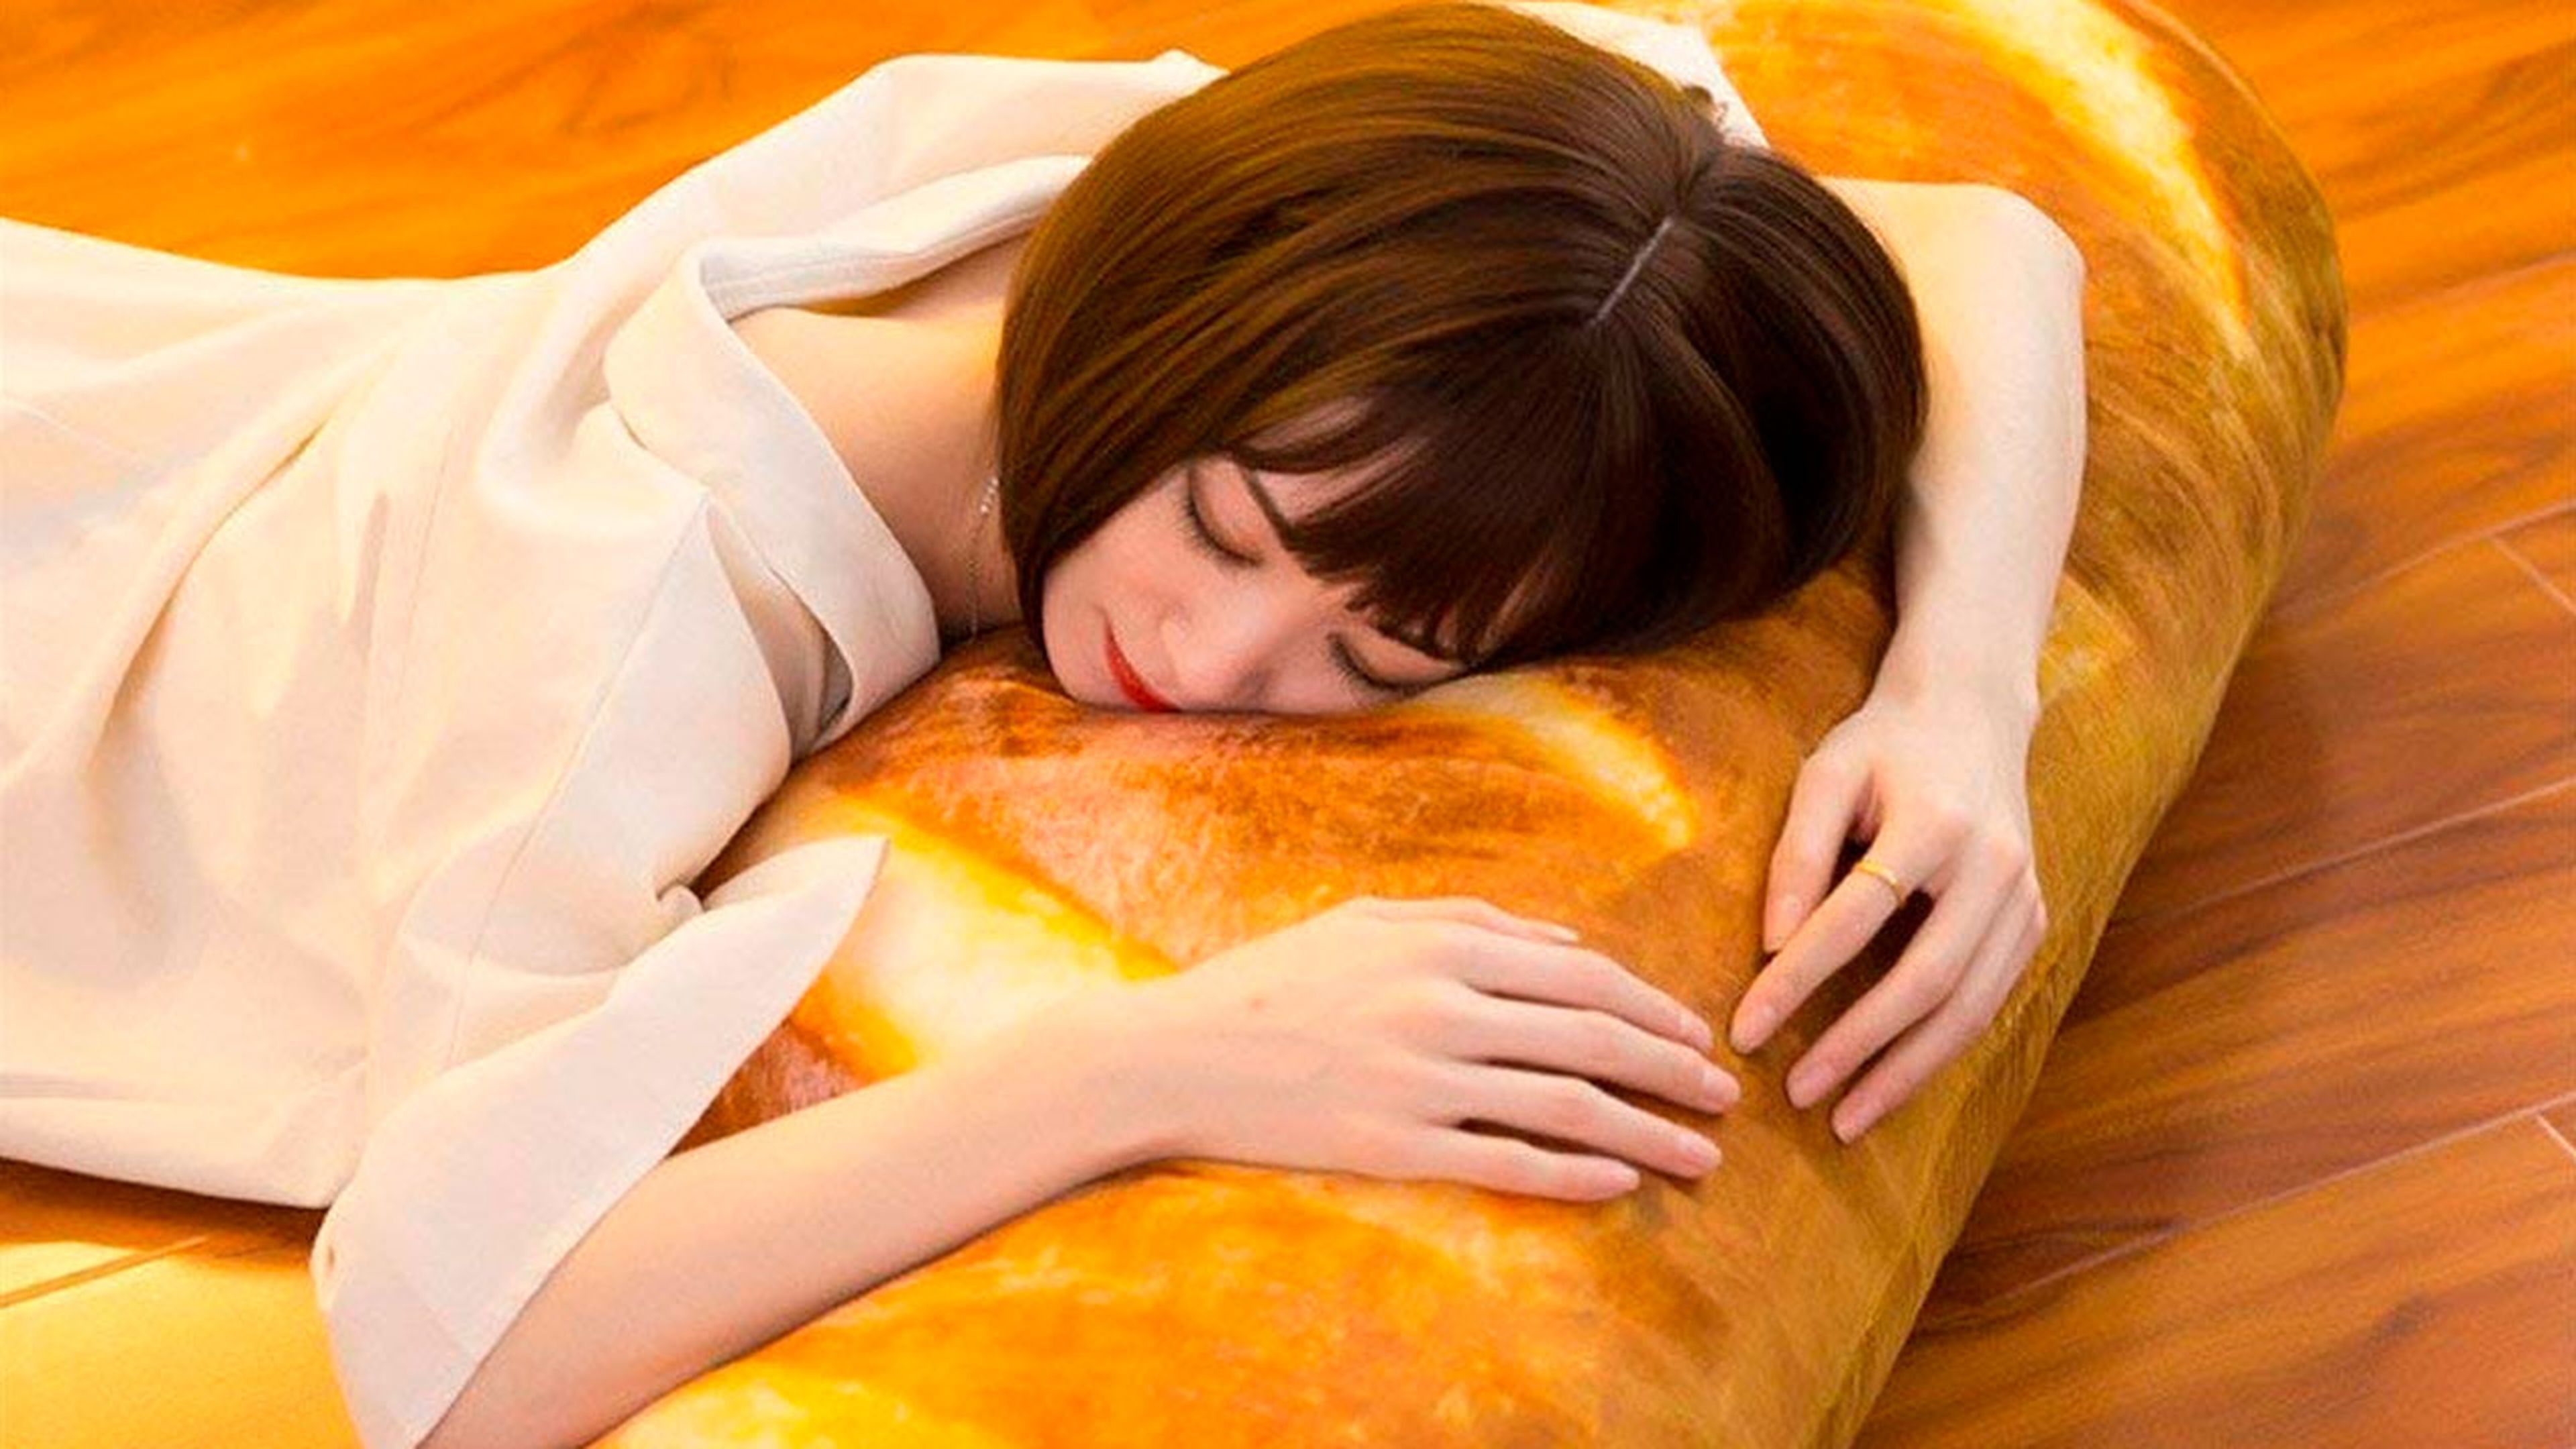 Amazon pone a la venta una almohada con forma de barra pan gigante